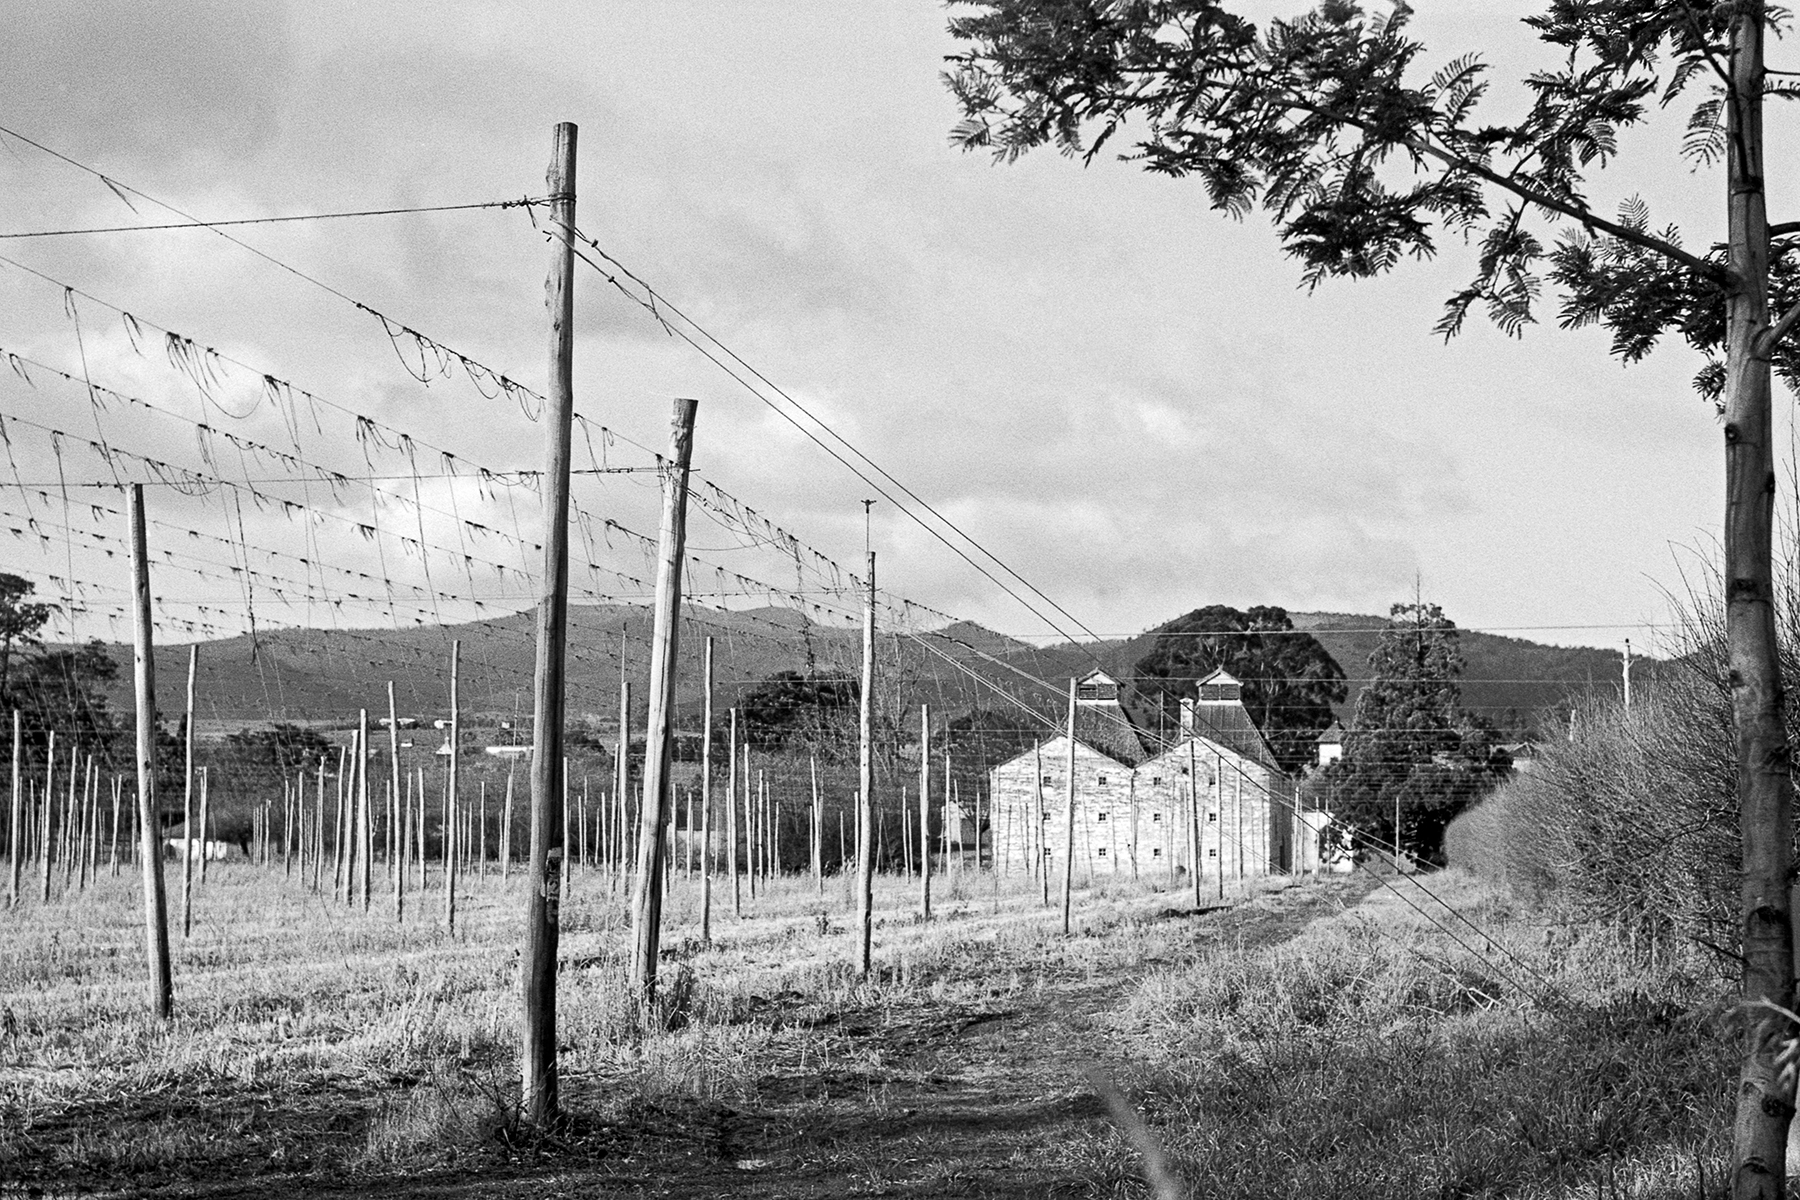 Hops Field Tasmania | KW Praktina FX | Carl Zeiss Jena 58mm f2 Biotar | Fujifilm Neopan Acros 100, developed in Ilford ID-11 1+3 | Brett Rogers